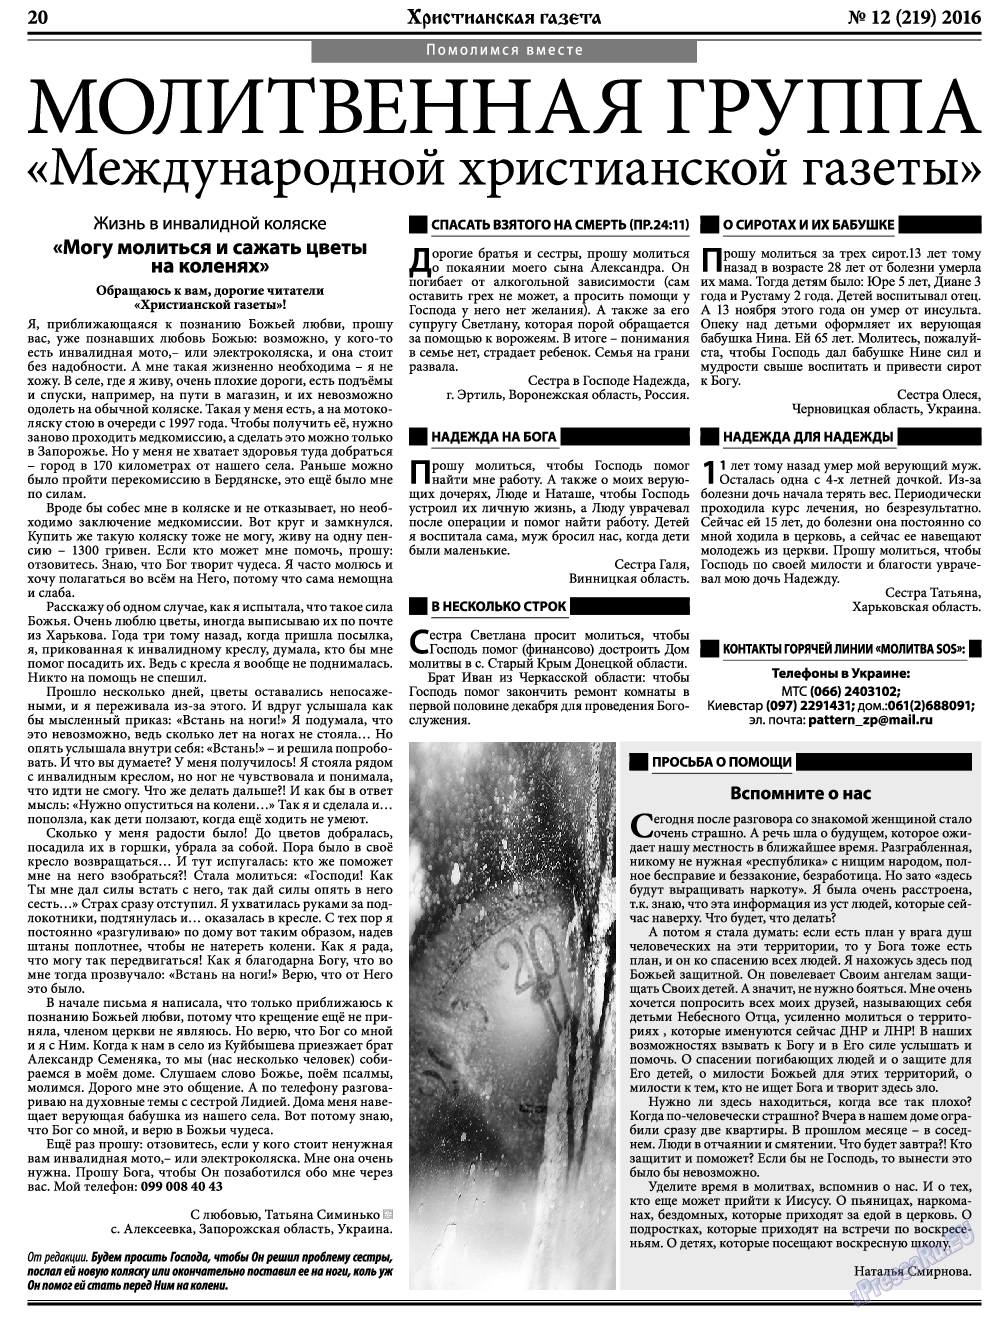 Христианская газета, газета. 2016 №12 стр.28